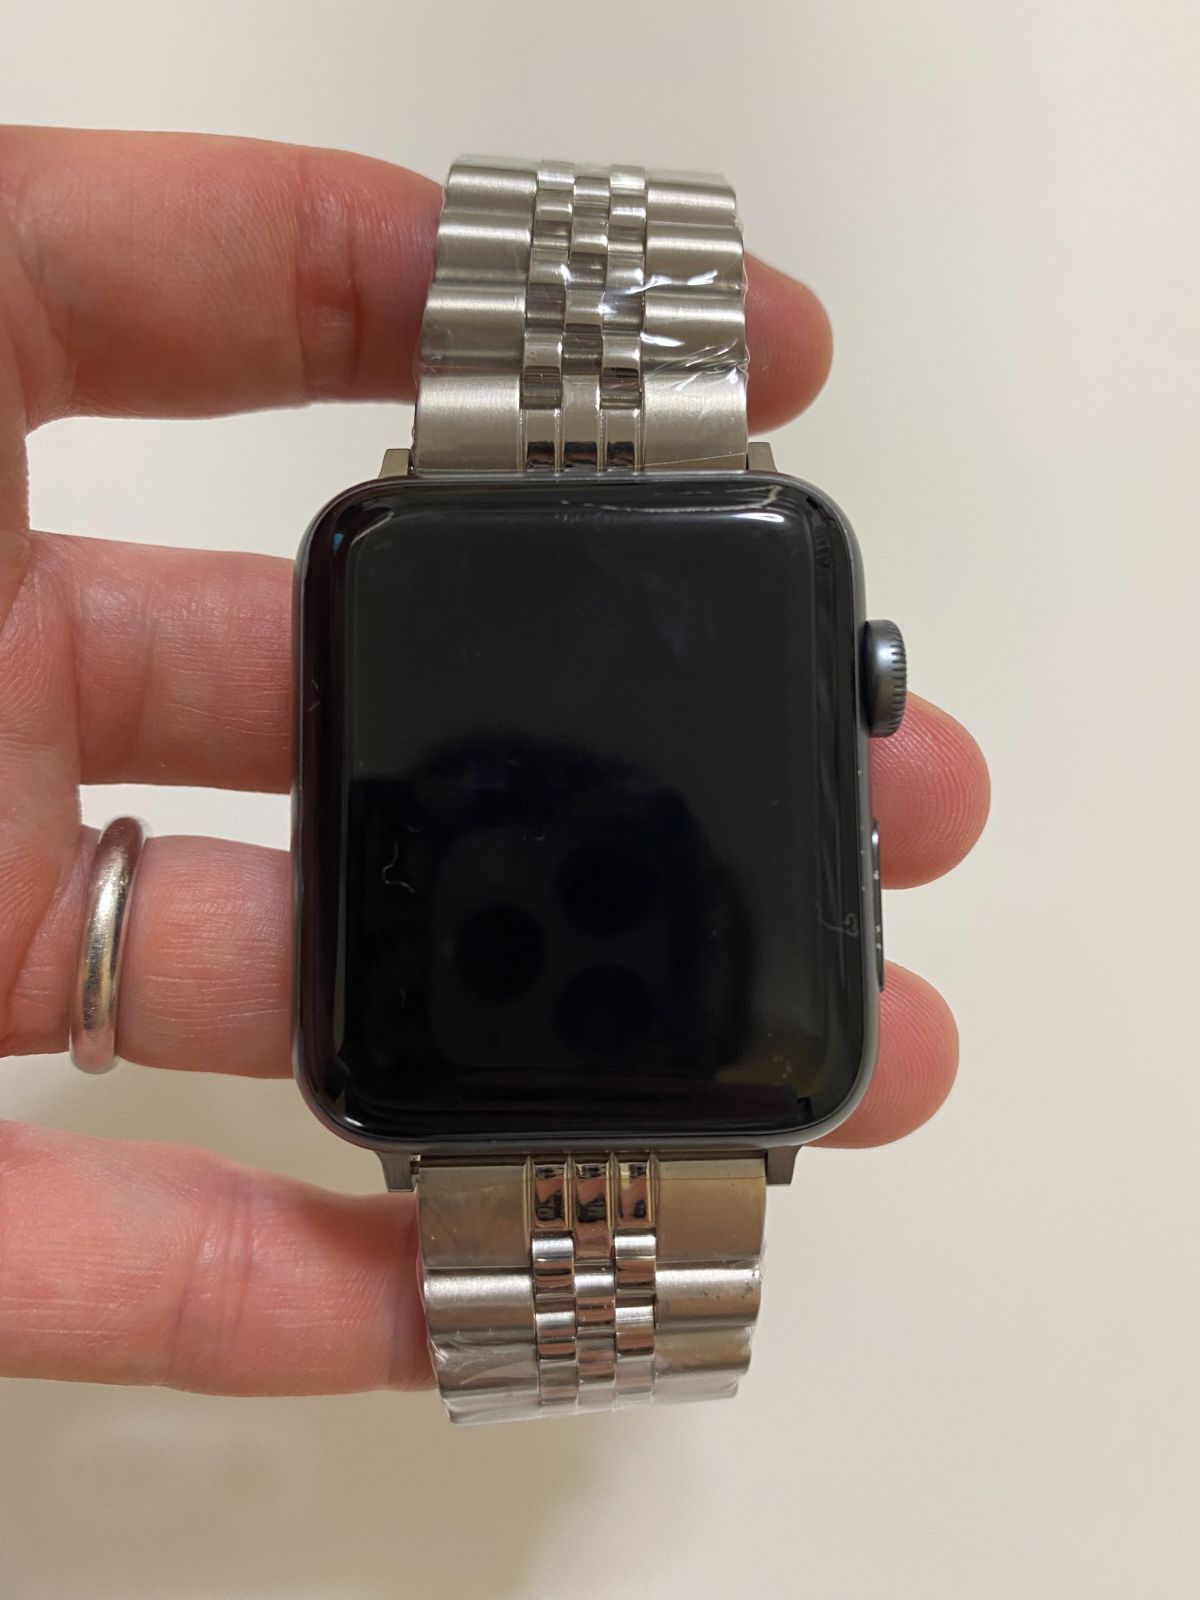 バンド ベルトステンレス 銀 Apple watch アップルウォッチ 人気 全部の大きさに対応サイズ用意